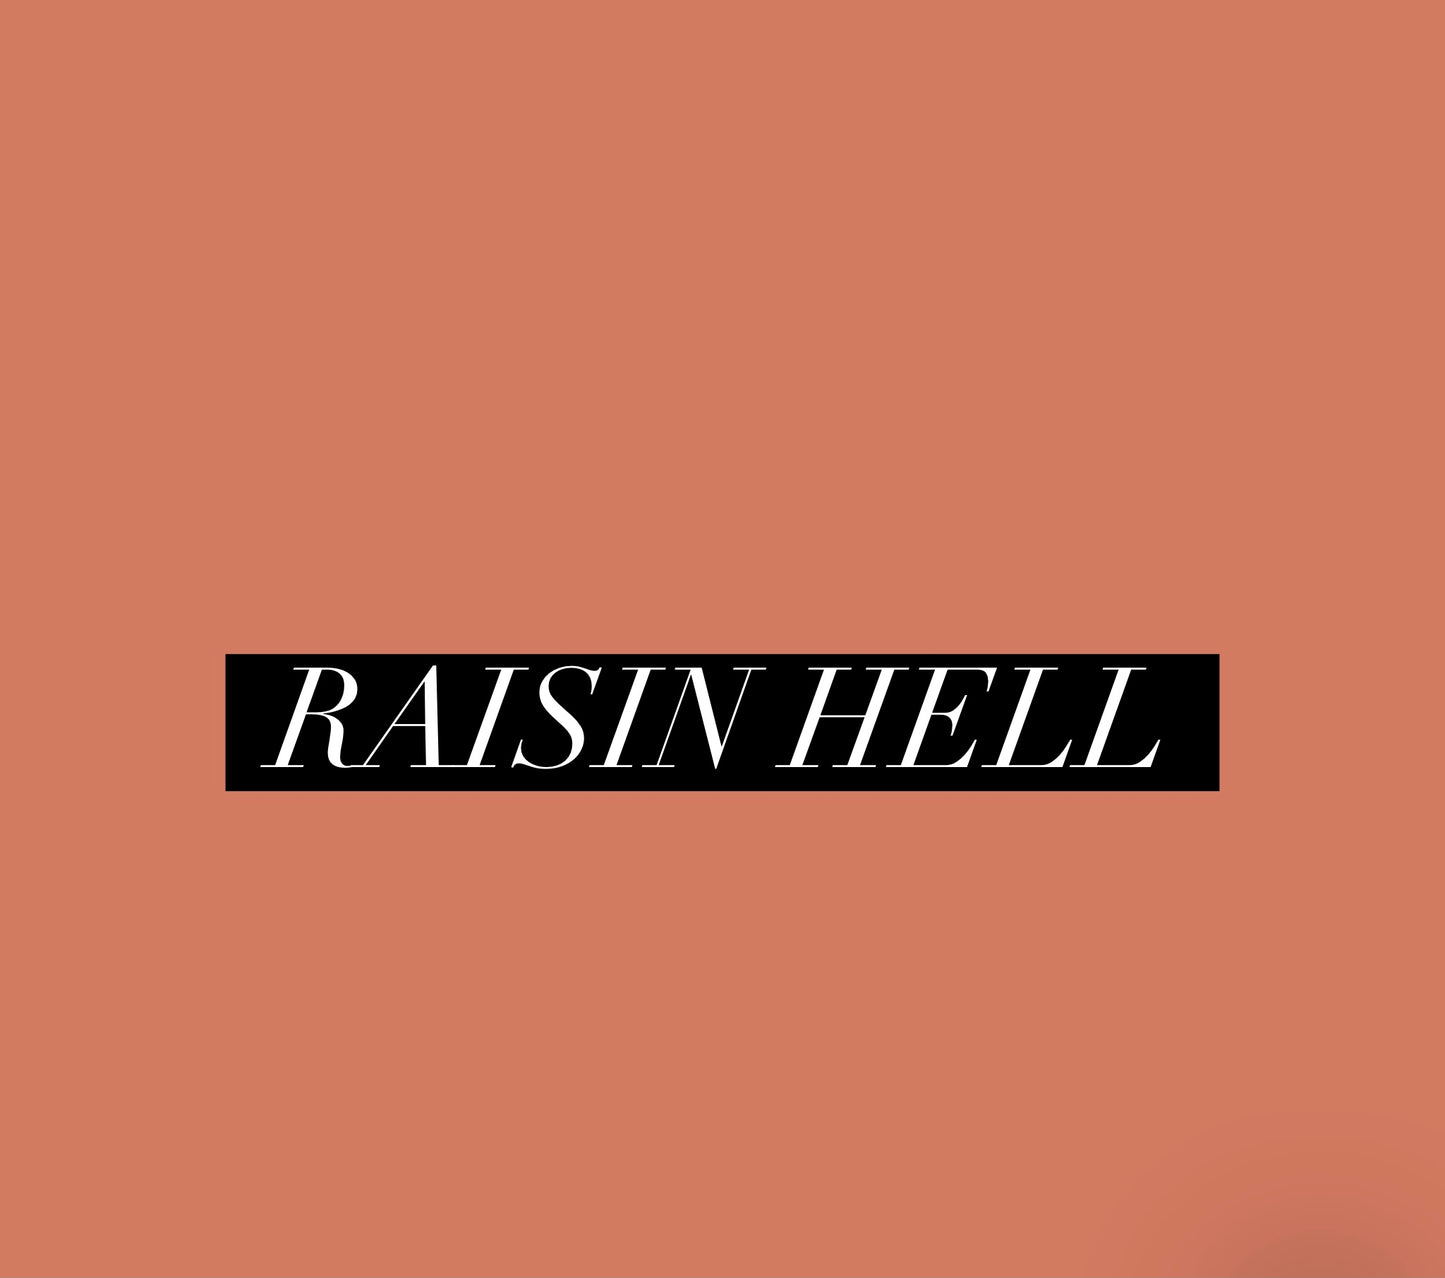 Raisin Hell